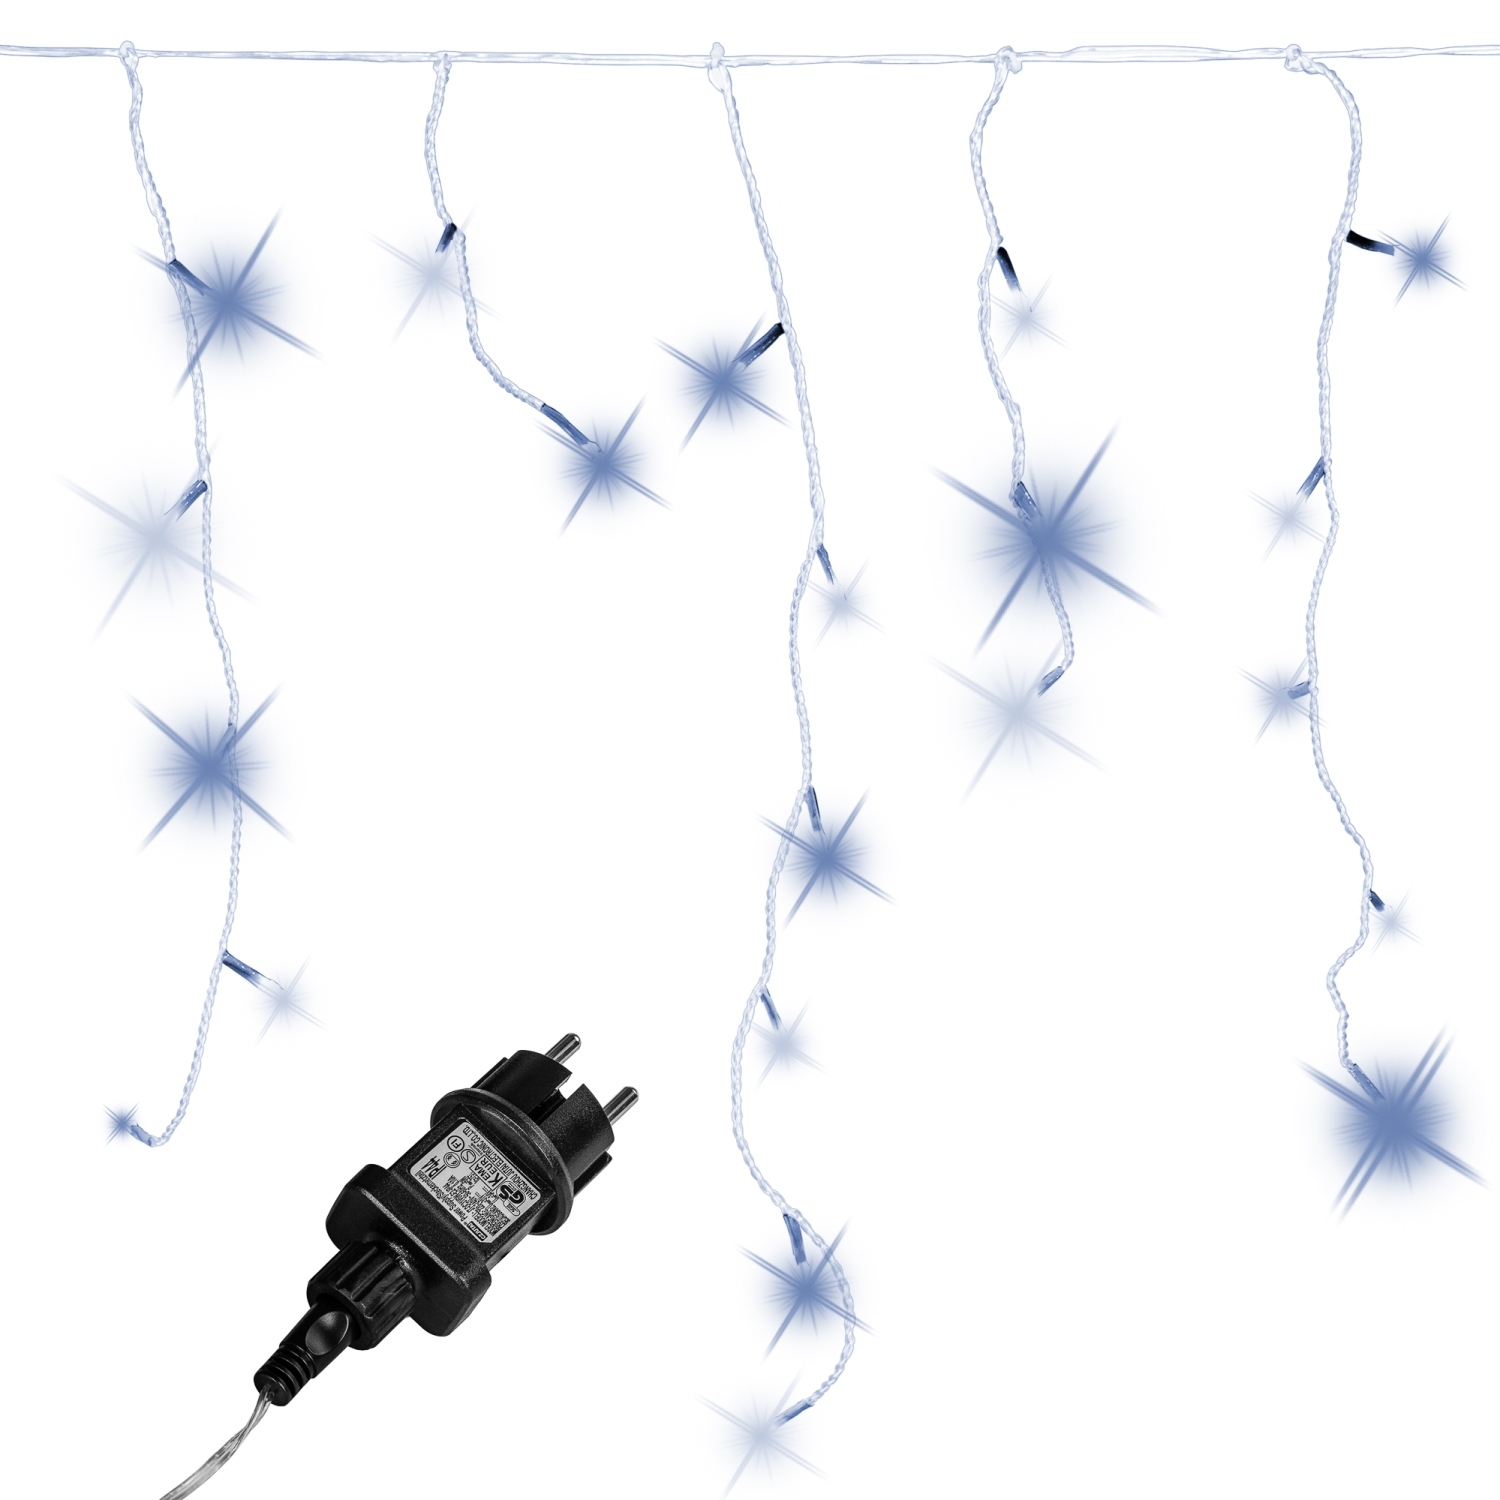 Lichtgordijn – Ijspegelverlichting – Voor Binnen en Buiten – Met afstandsbediening – 15 m – Koud wit